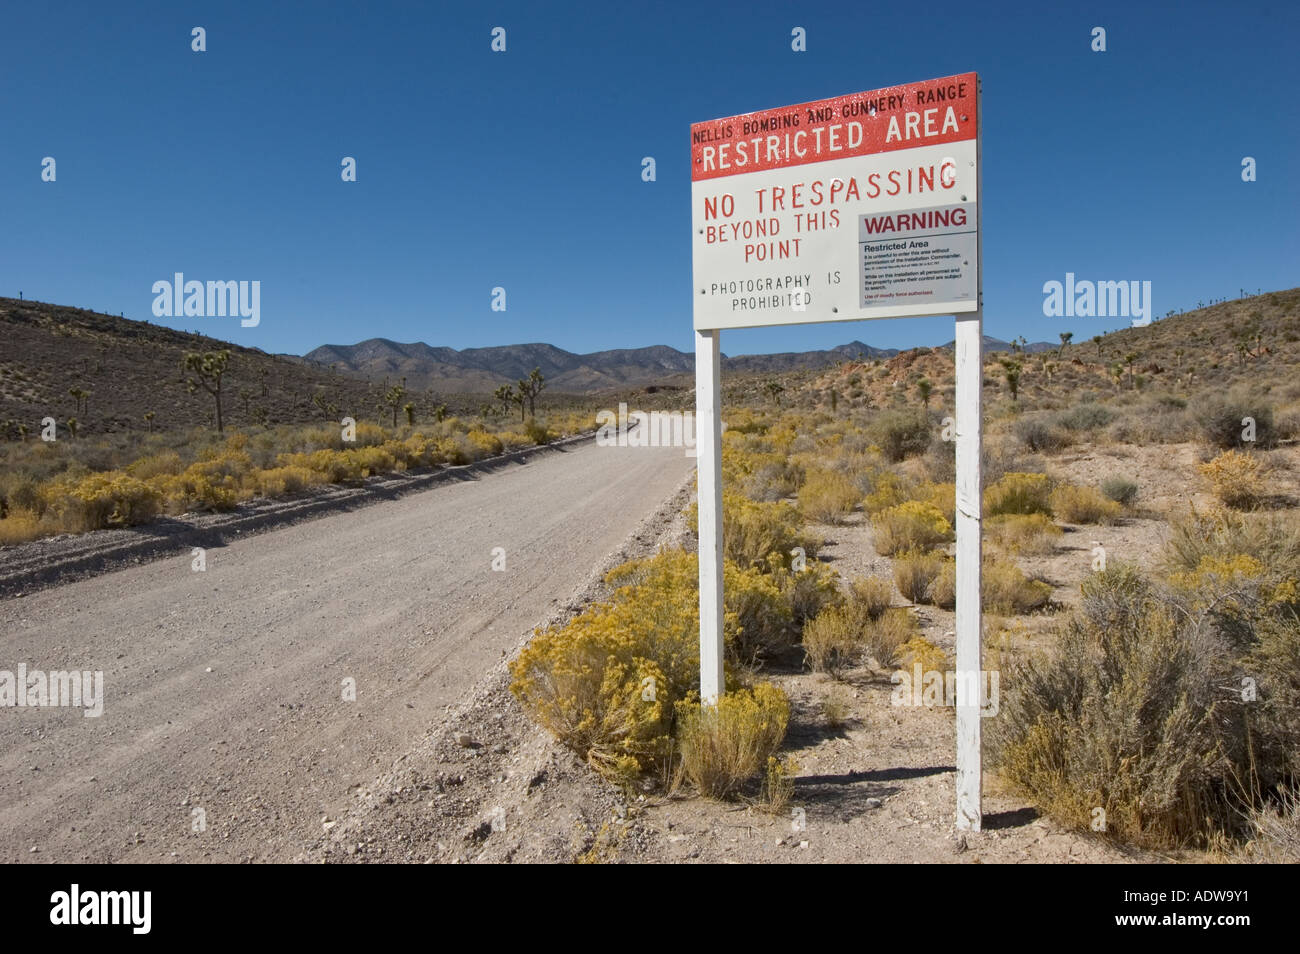 Nevada Extraterrestrial Highway Groom Lake Road Eingang Nellis Bombing und Gunnery Range Bereich 51 No Trespassing Zeichen Stockfoto